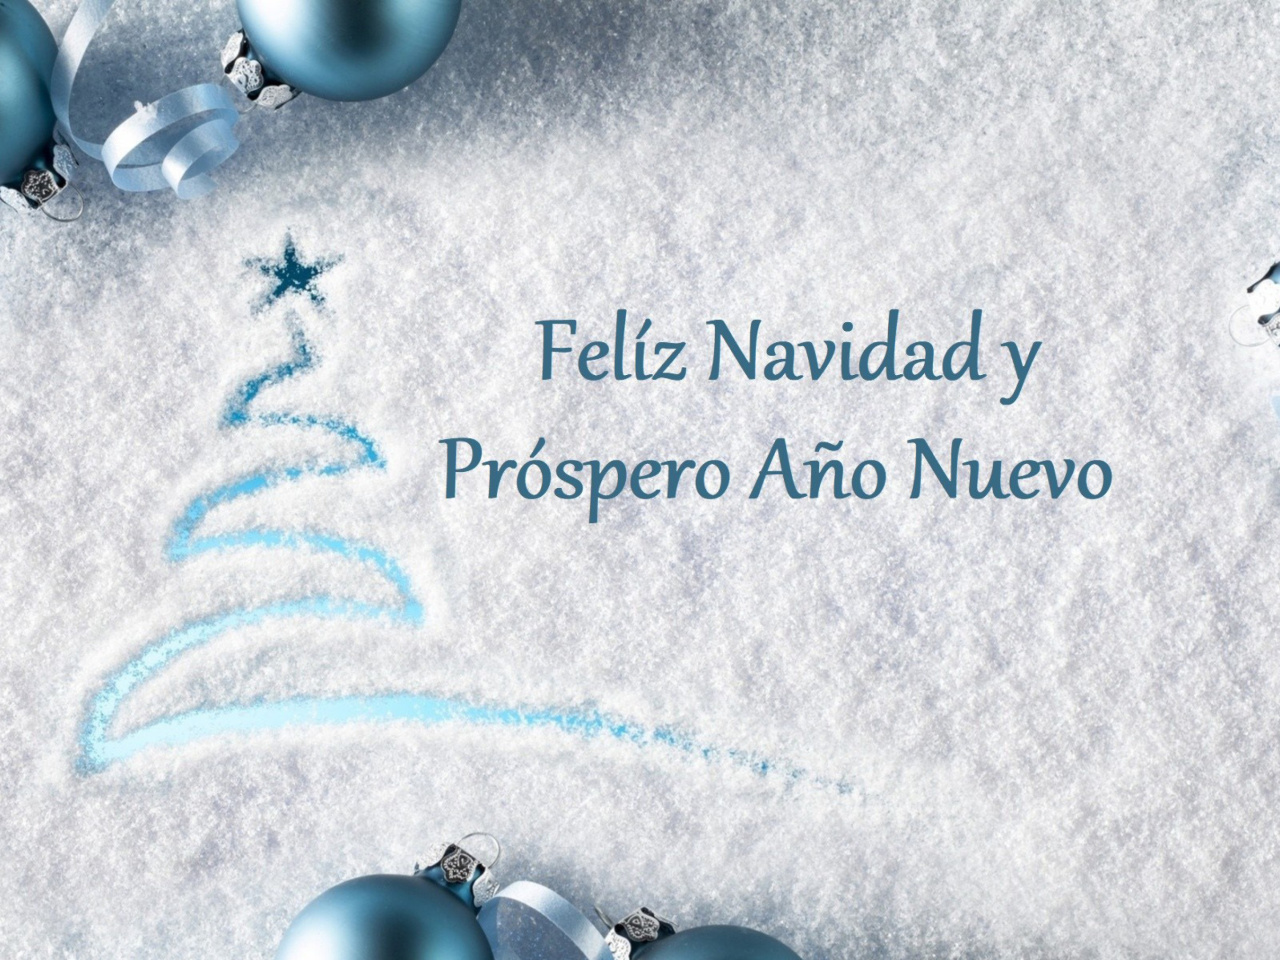 Das Feliz Navidad y Prospero Ano Nuevo Wallpaper 1280x960